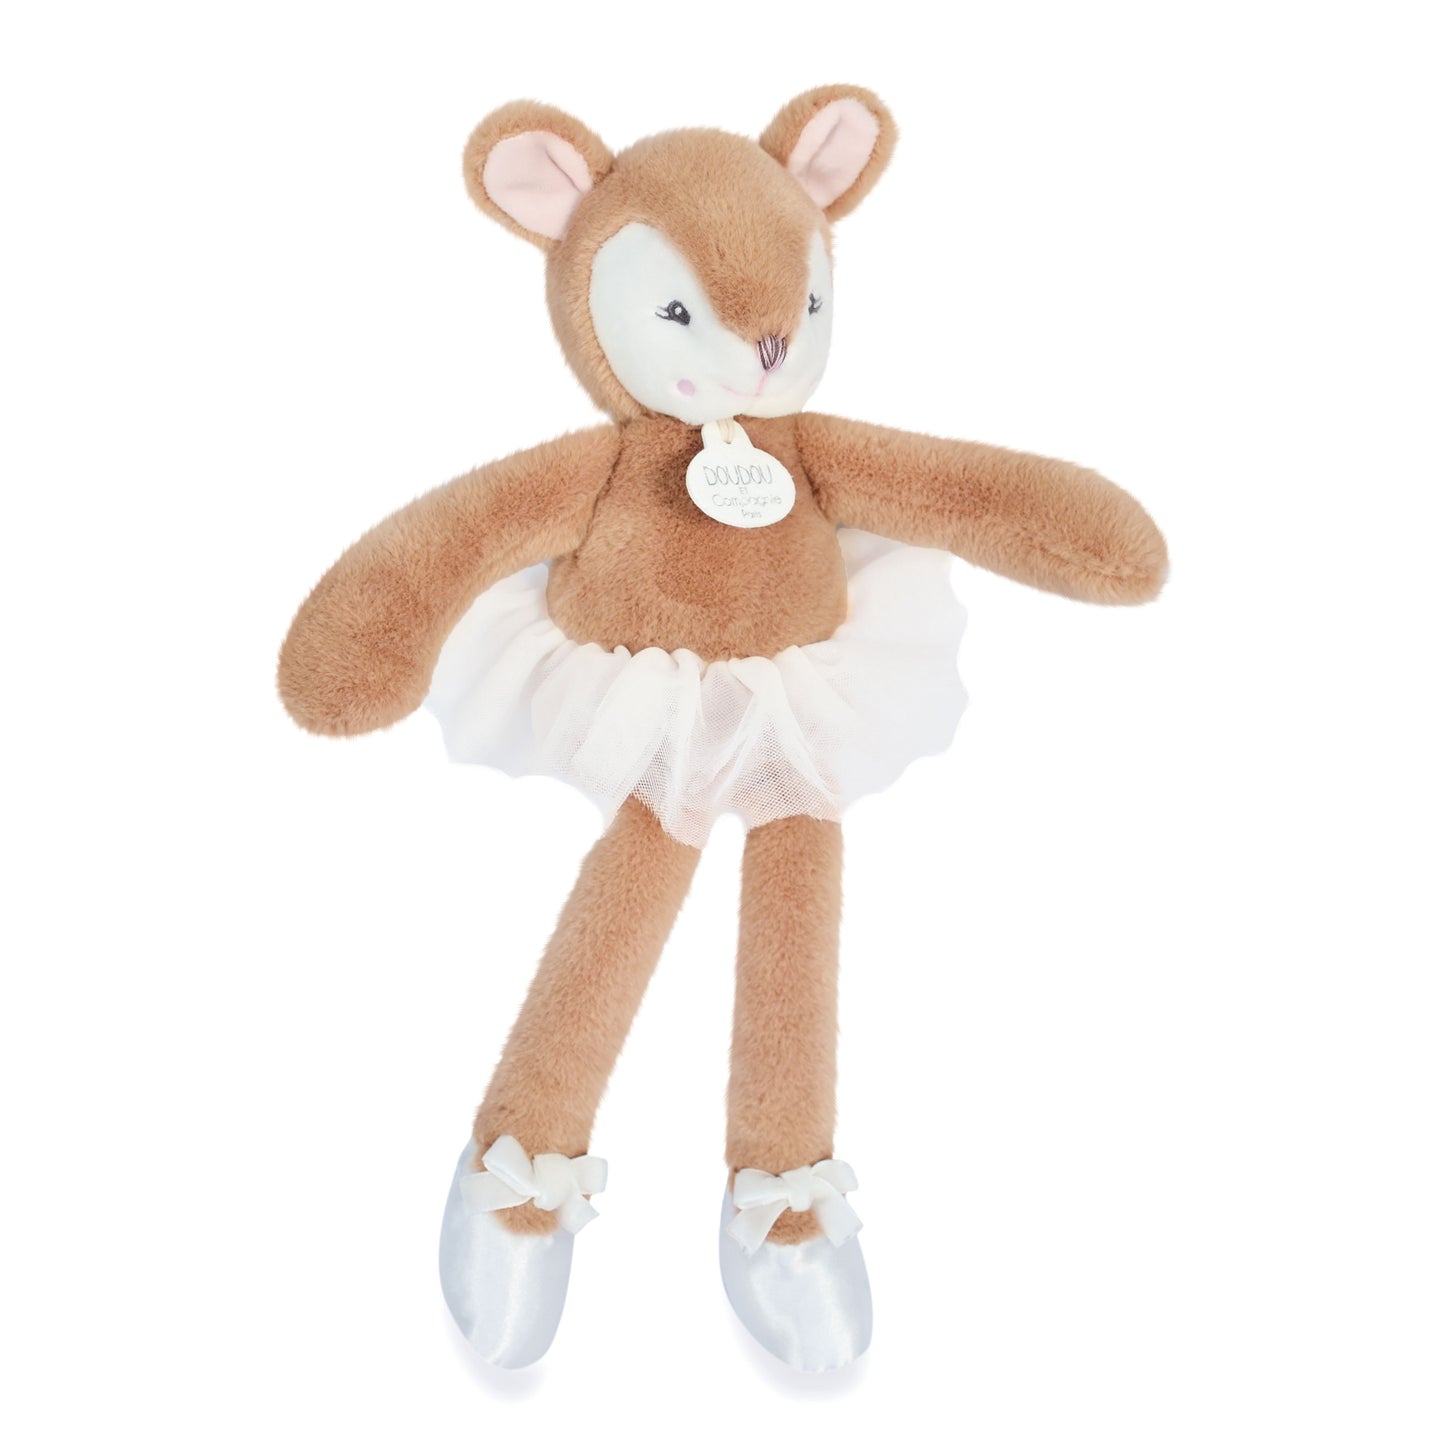 My Doudou Ballerine Baby Deer 30 Cm